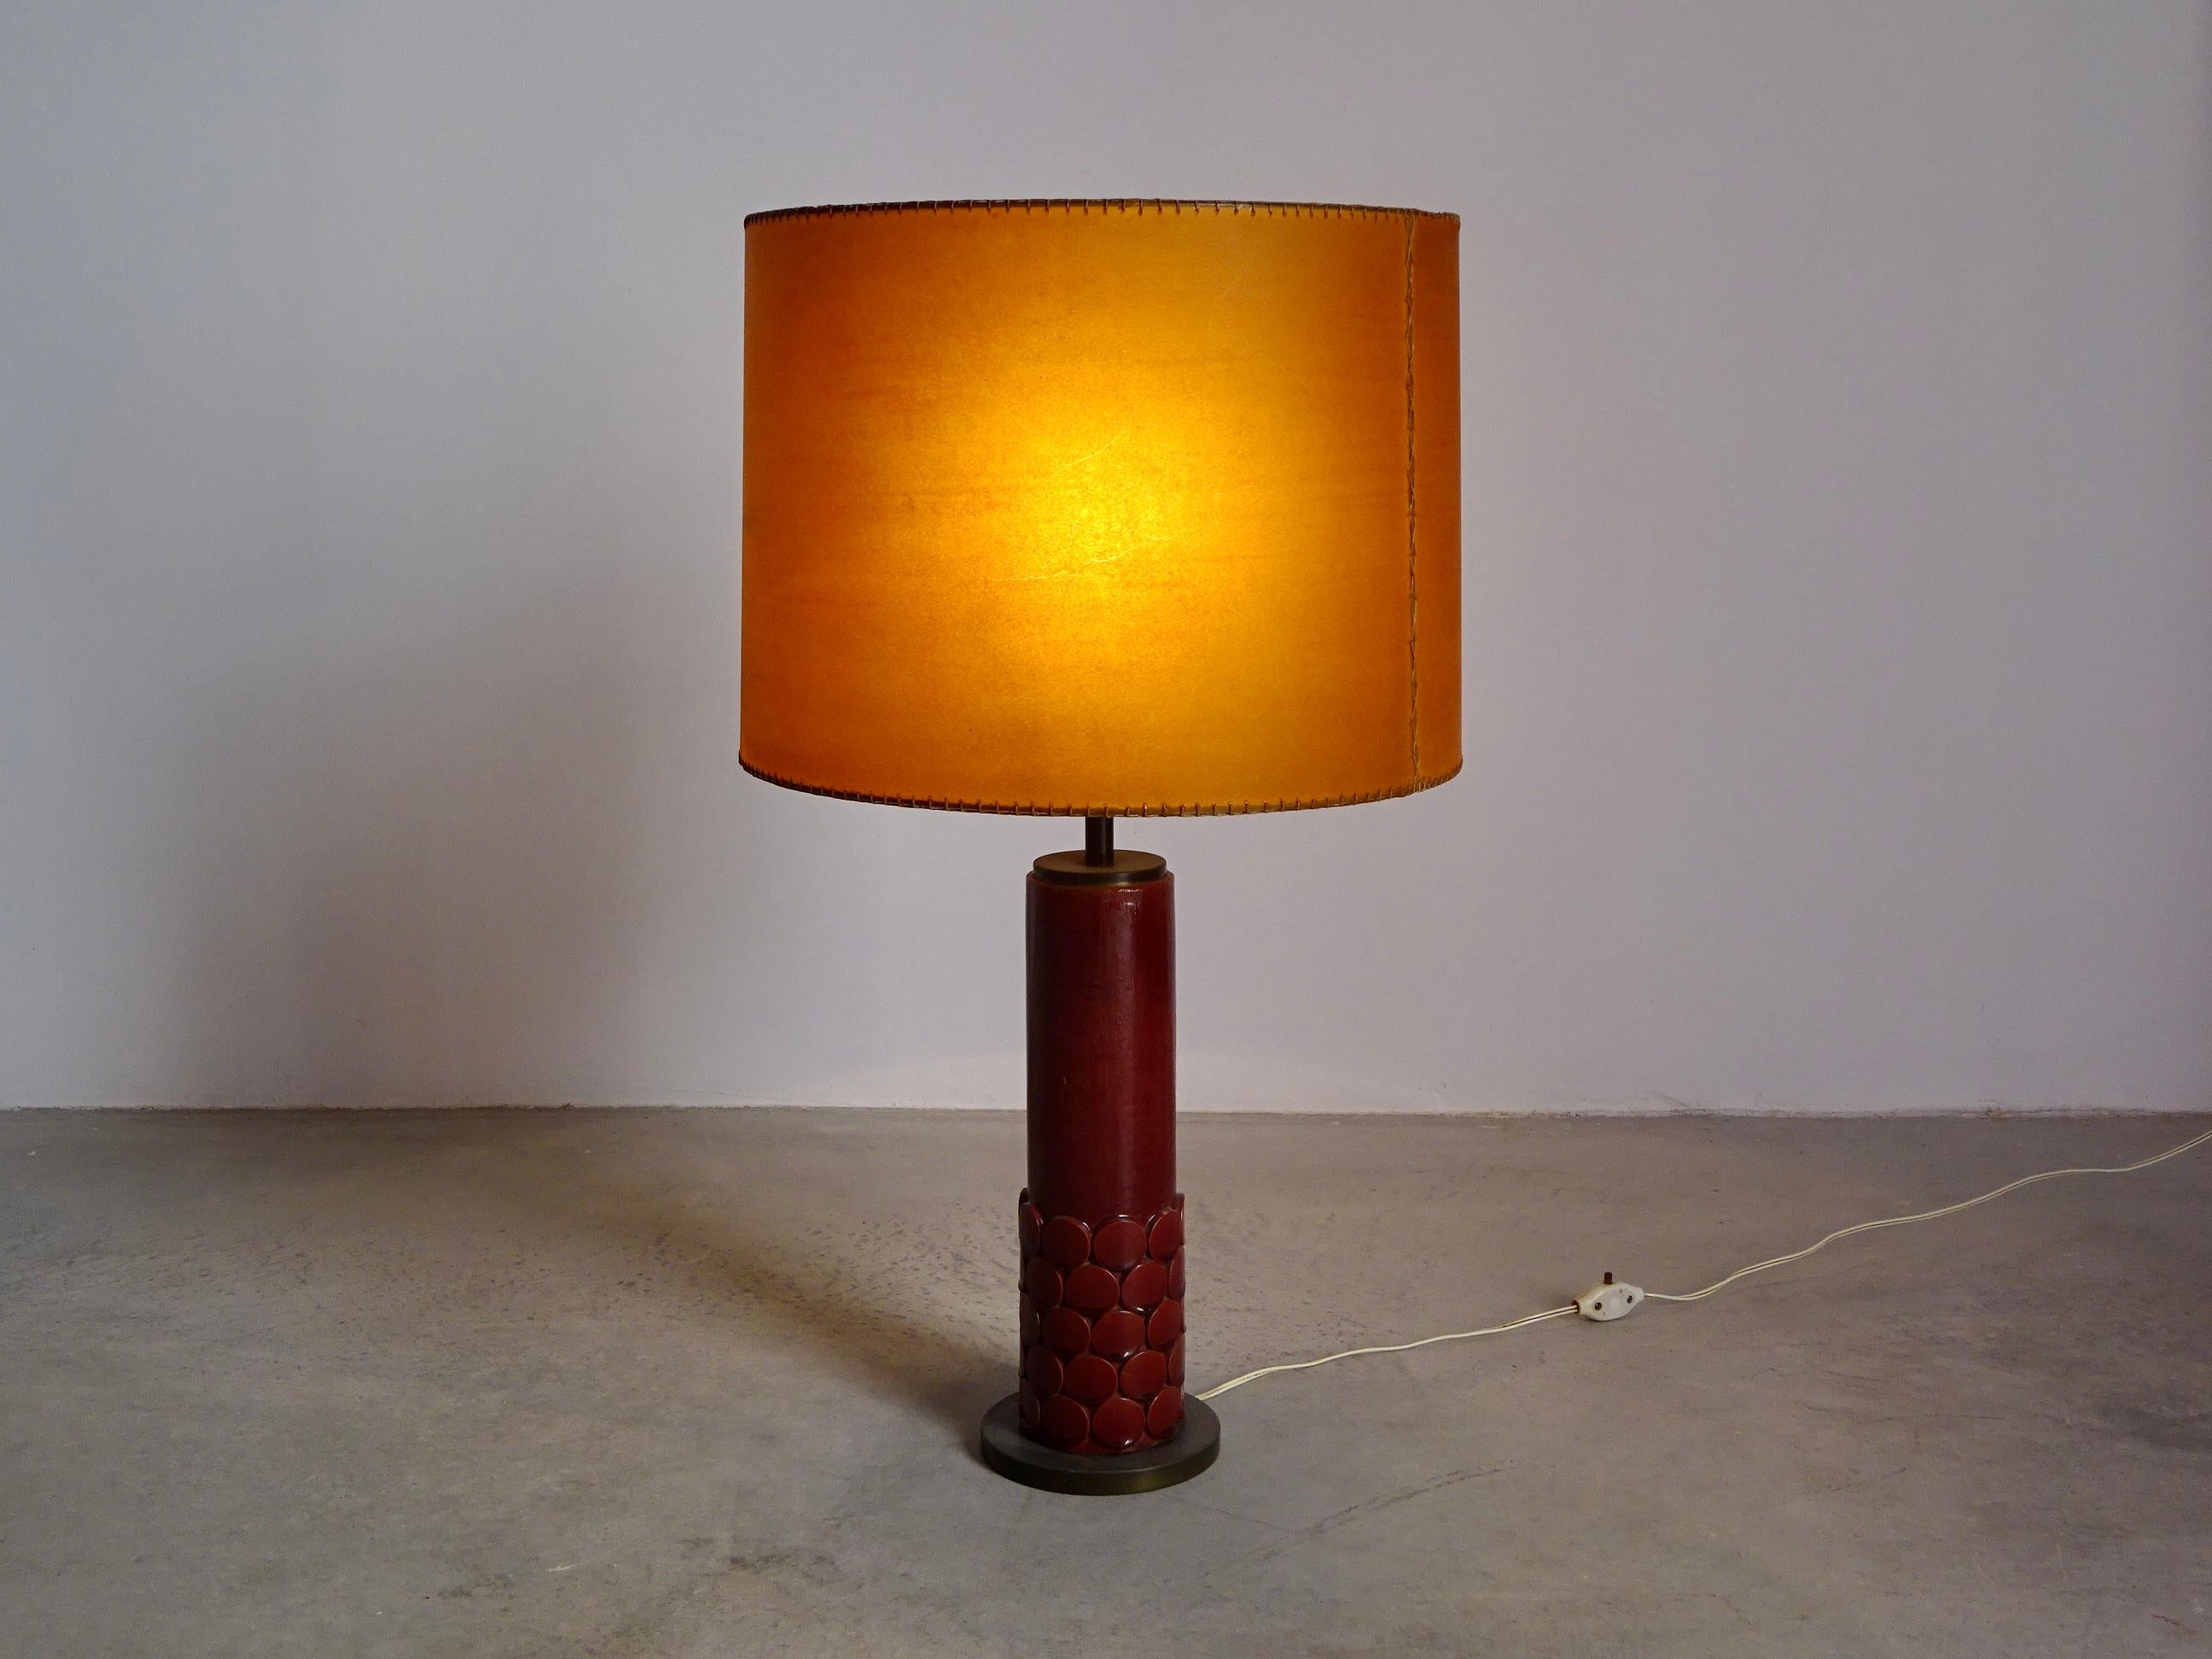 Tischleuchte, 1973 von Jordi Vilanova i Bosch entworfen, mit Messingfuß, Keramik von Jordi Aguadé und Lampenschirm aus genähtem Leder. Die Lampe hat eine schöne Patina, bereit zu verwenden. Jordi Vilanova (1925-1988) beschäftigte sich intensiv mit